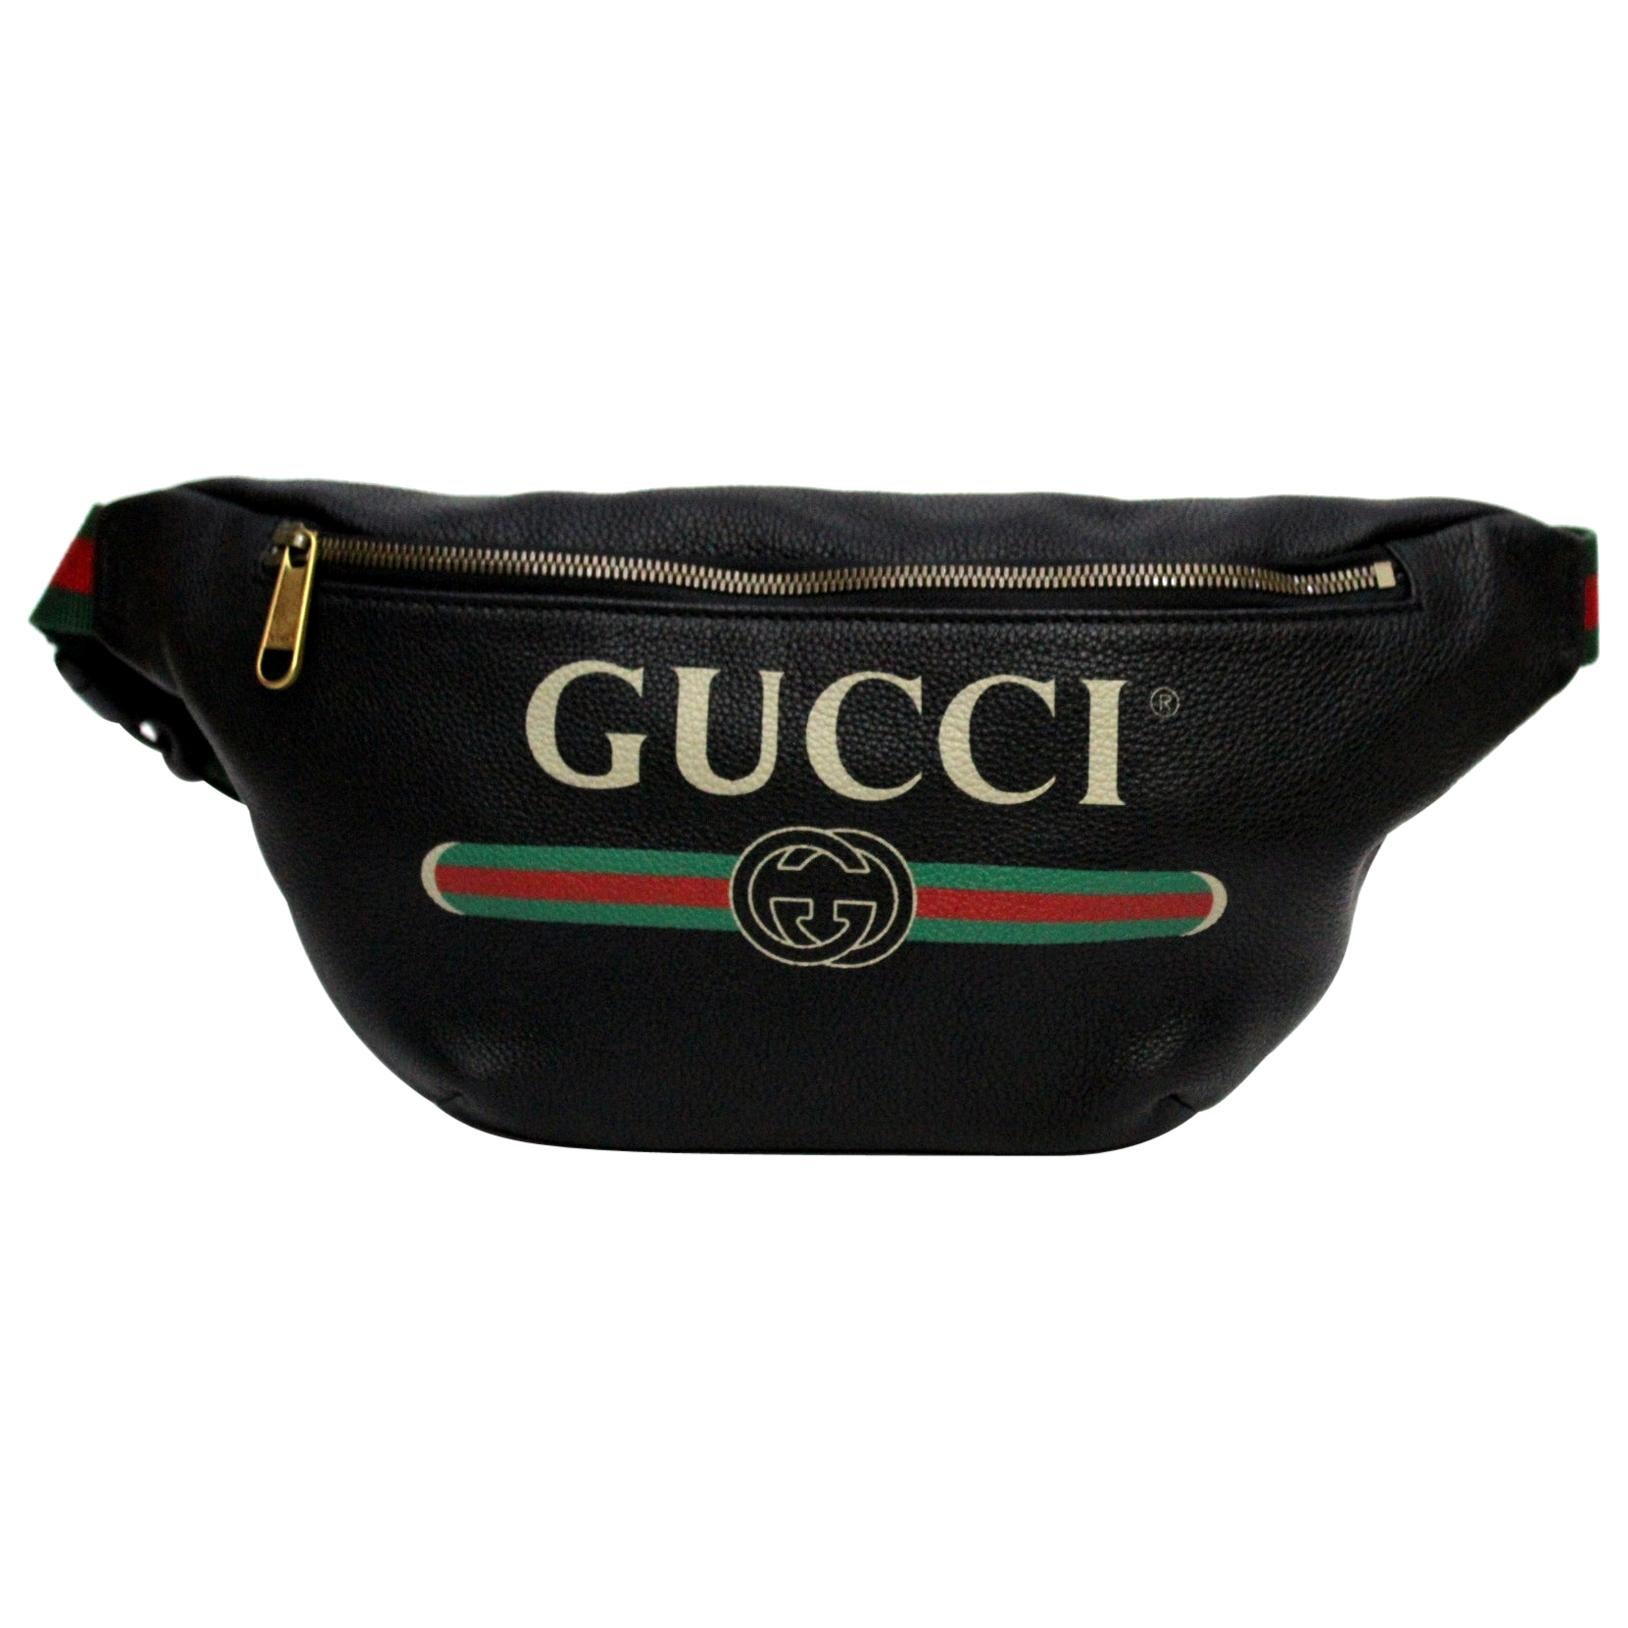 Gucci Black Leather Belt Bag